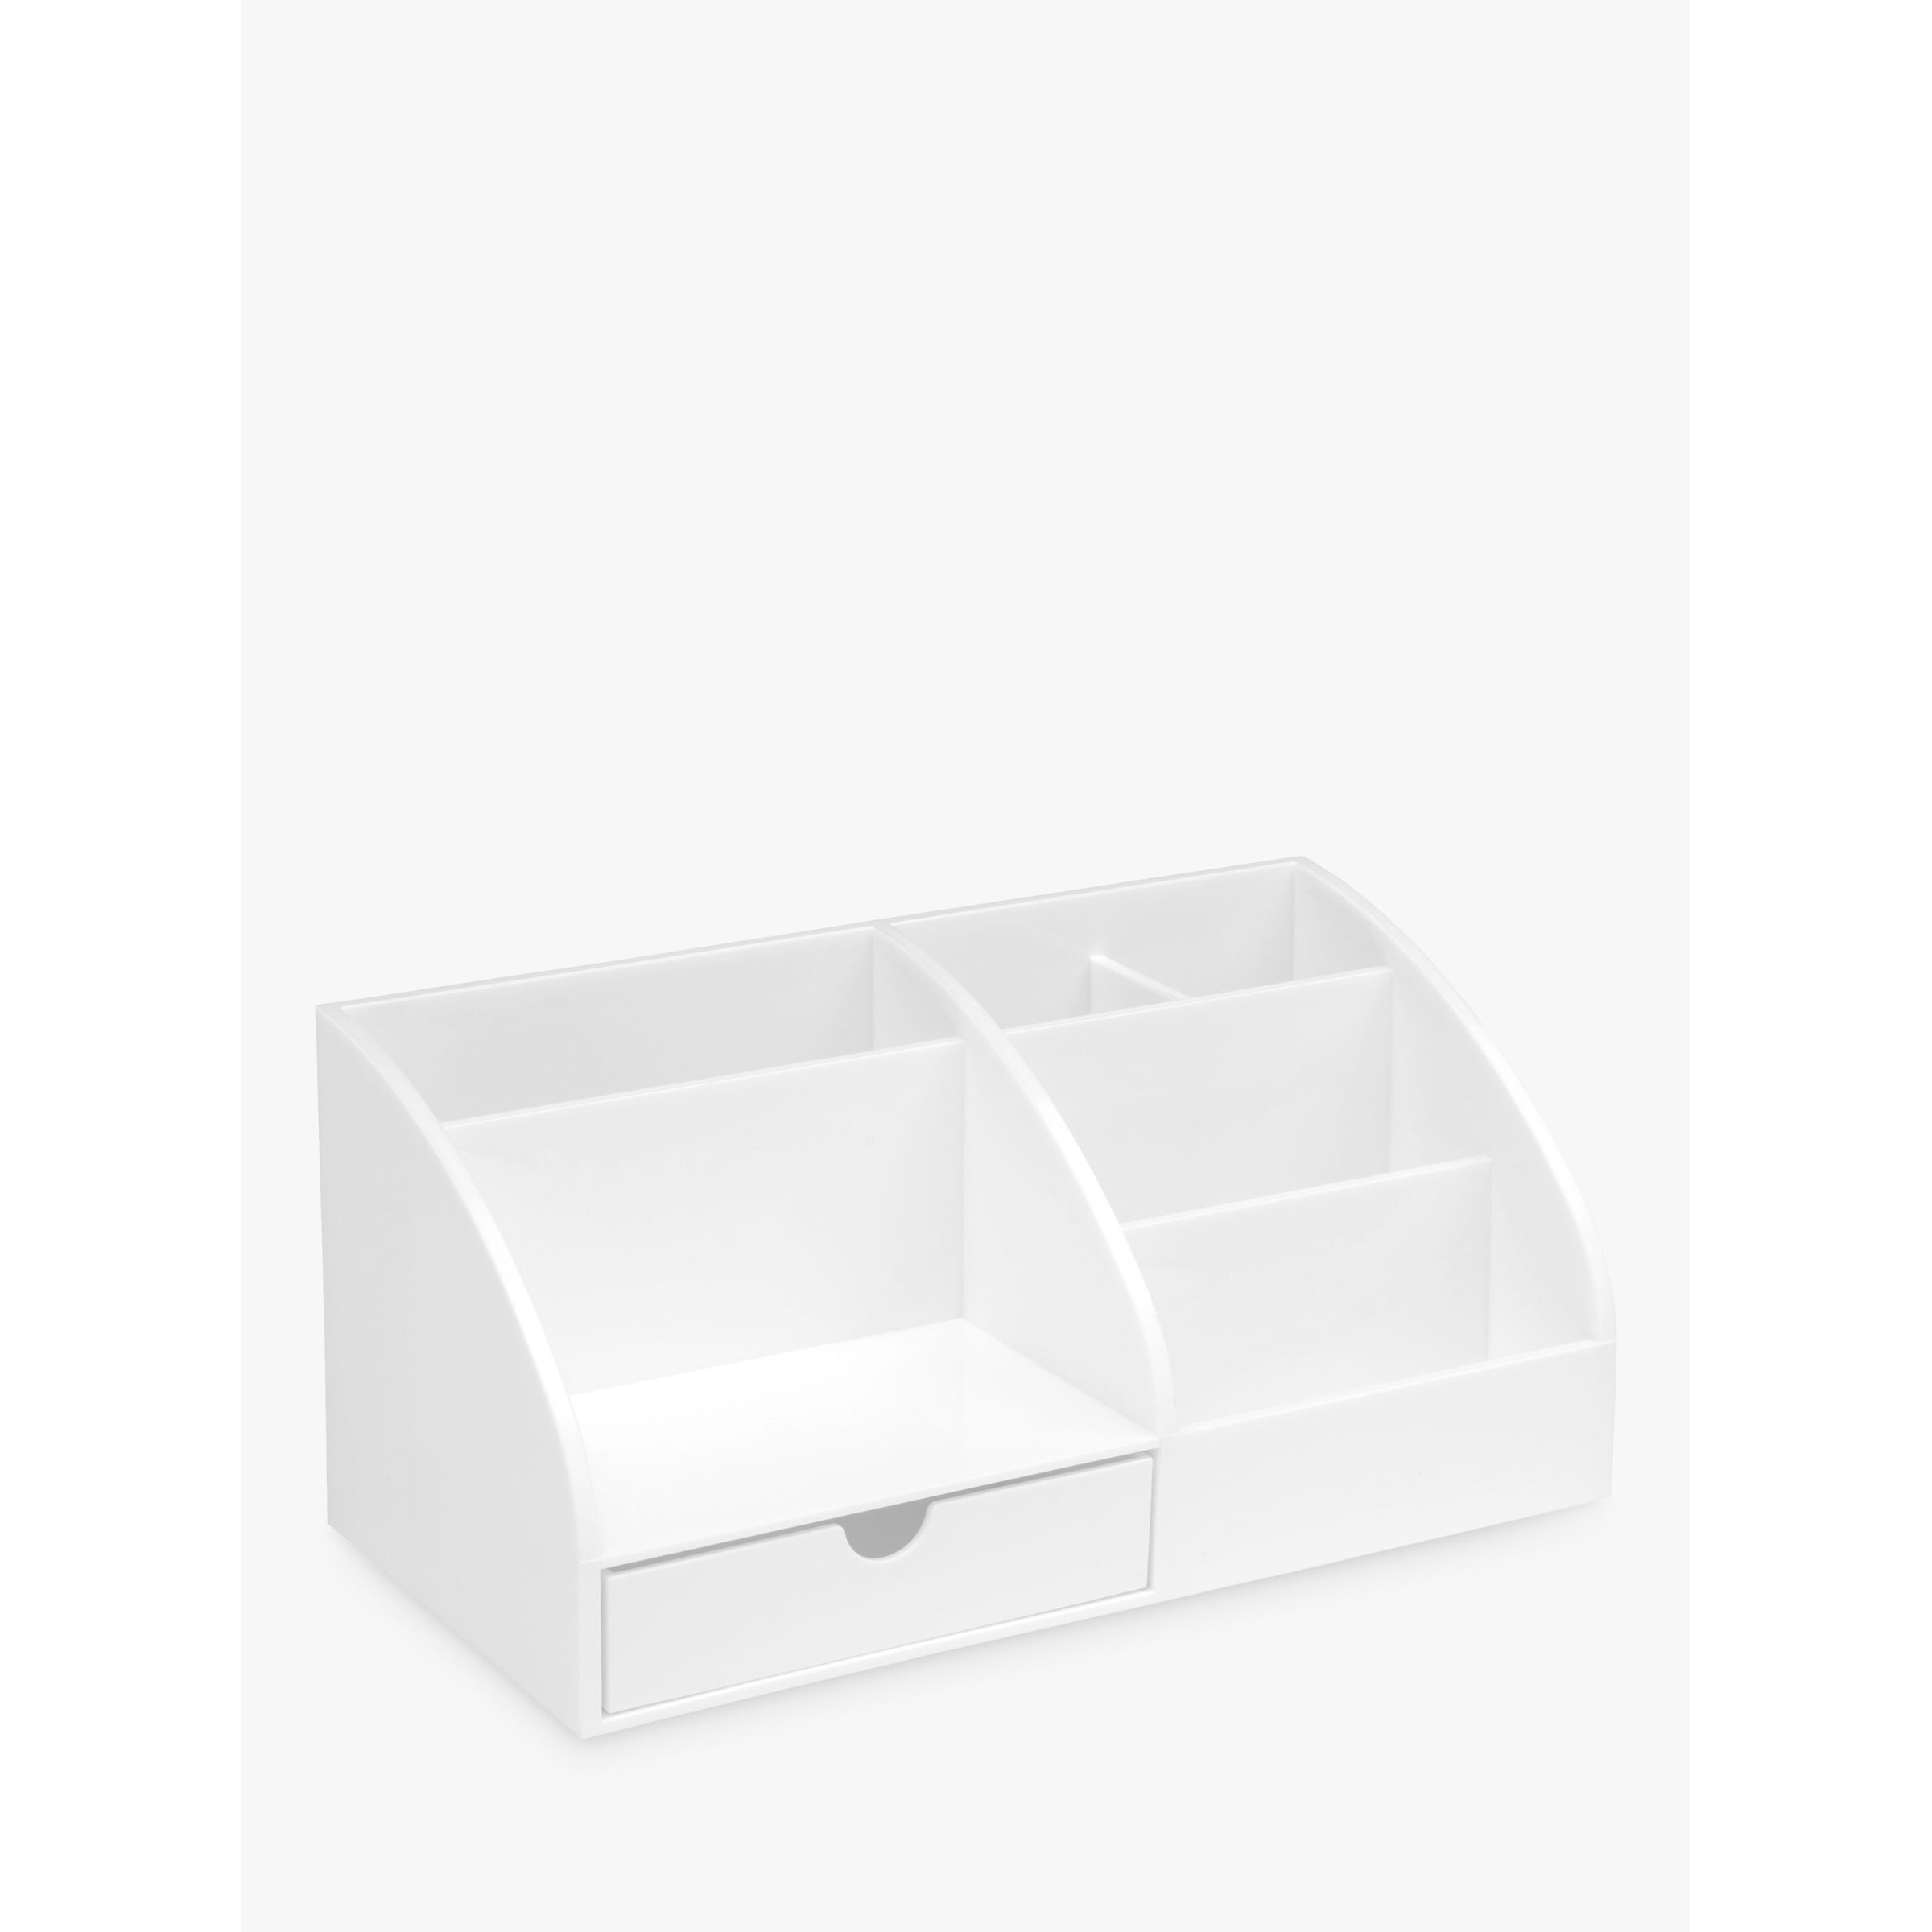 Osco Plastic Desk Organiser, White - image 1